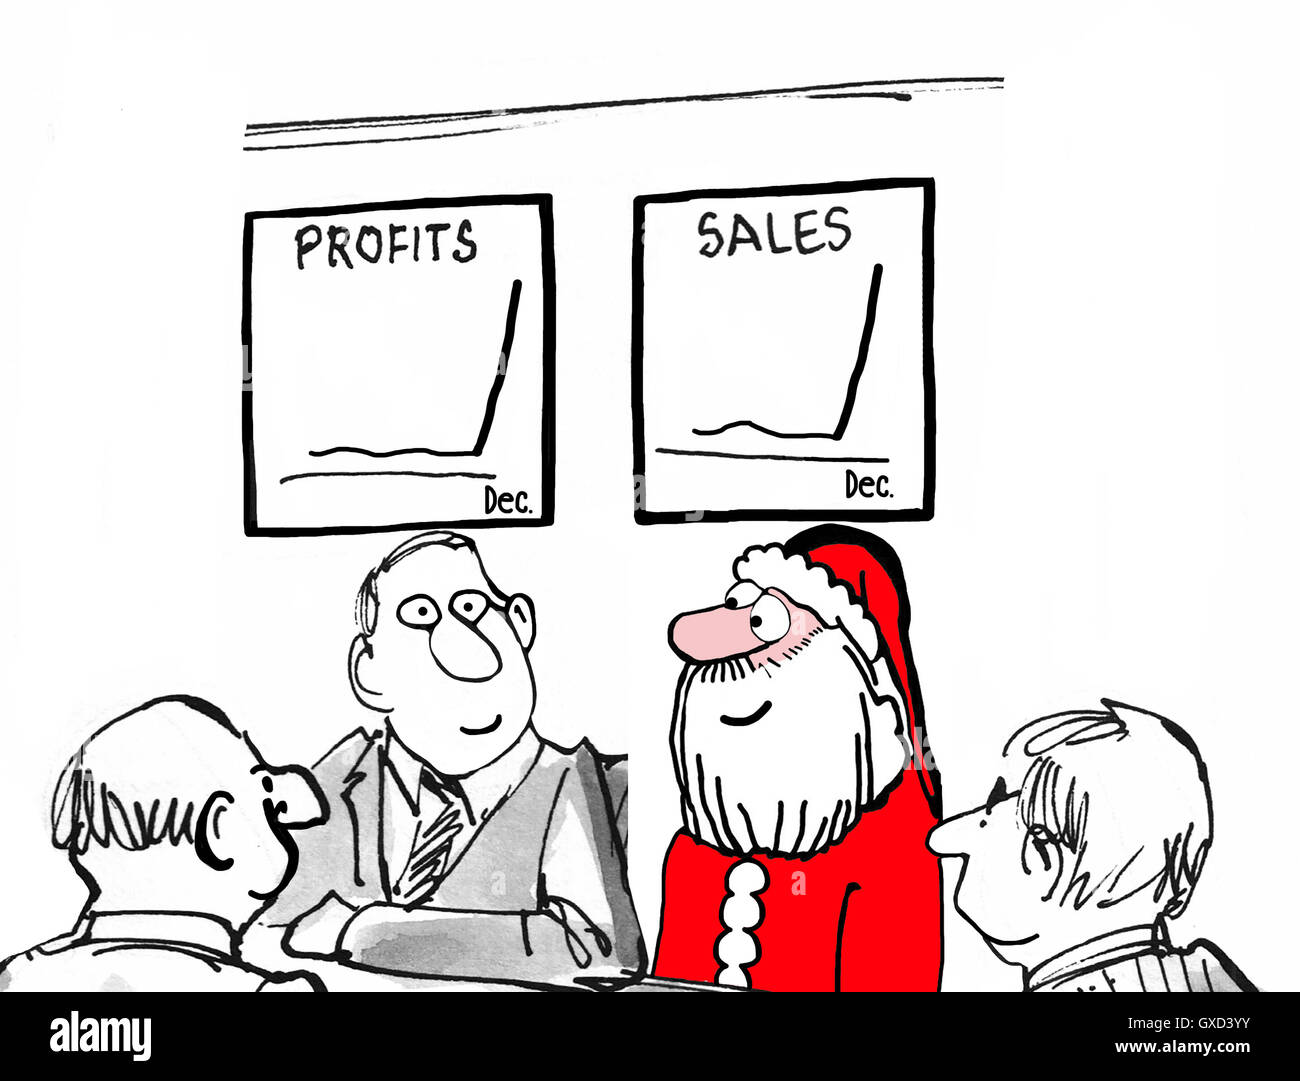 Business e di Natale illustrazione che mostra la Santa Claus in una riunione di affari e i grafici mostrano le vendite e i profitti sono in alto. Foto Stock